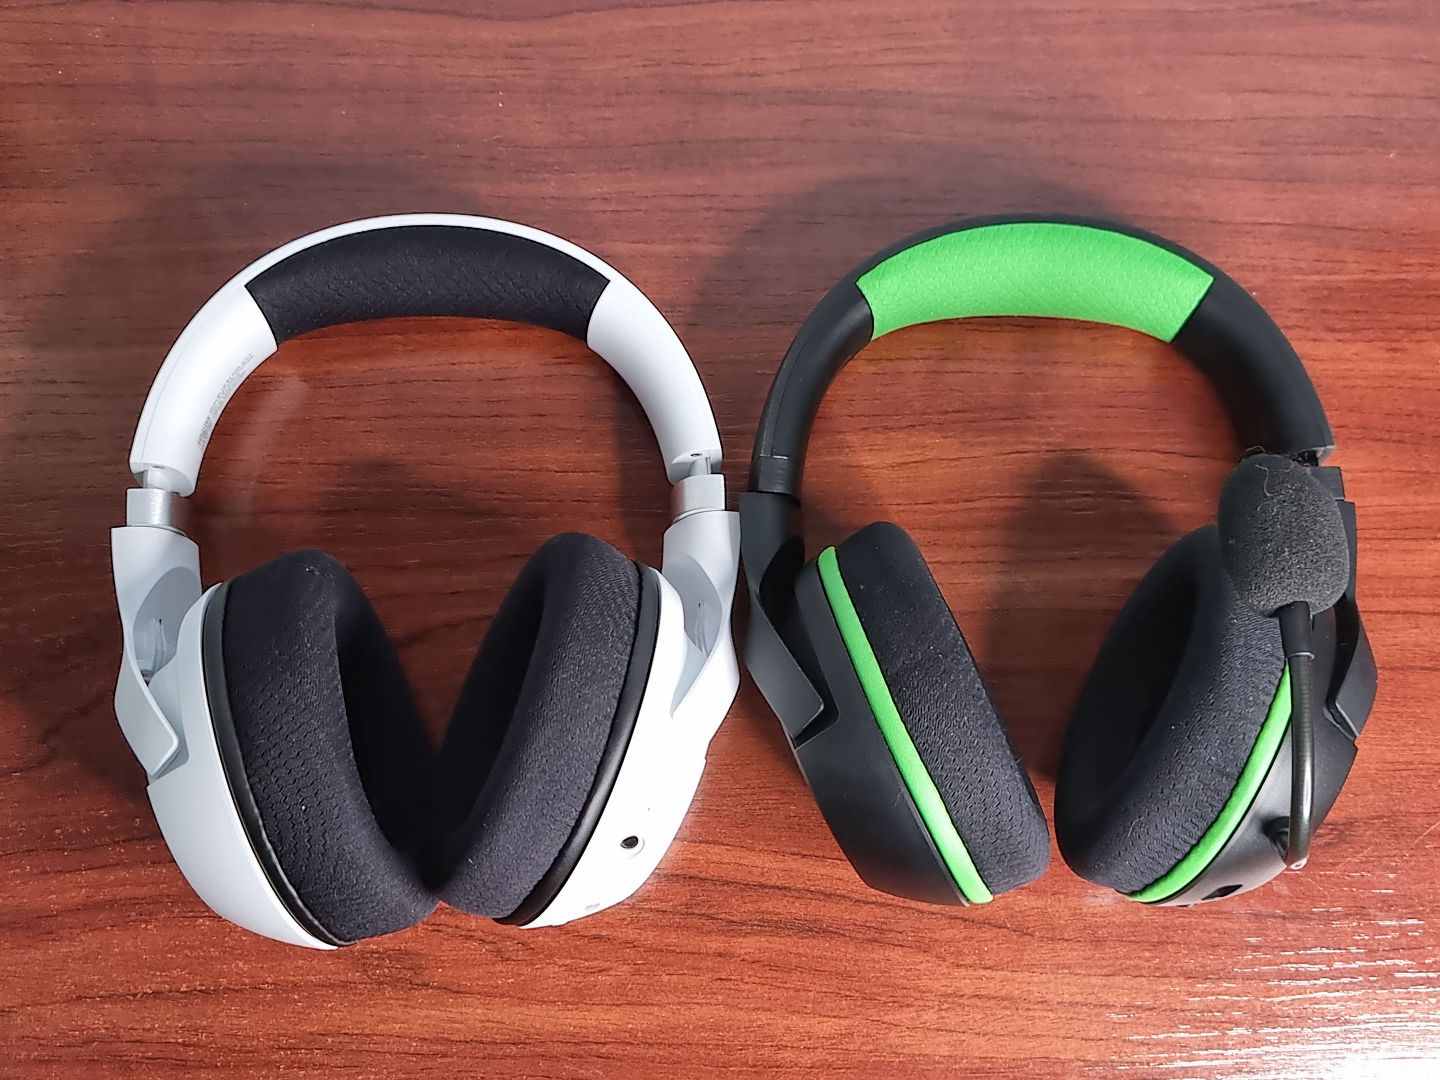 Analizamos los Razer Kaira Pro White, la nueva versión de uno de los mejores auriculares para Xbox - Hoy os traemos nuestras impresiones tras probar varios días los nuevos Razer Kaira Pro White, la nueva versión de estos fantásticos auriculares.